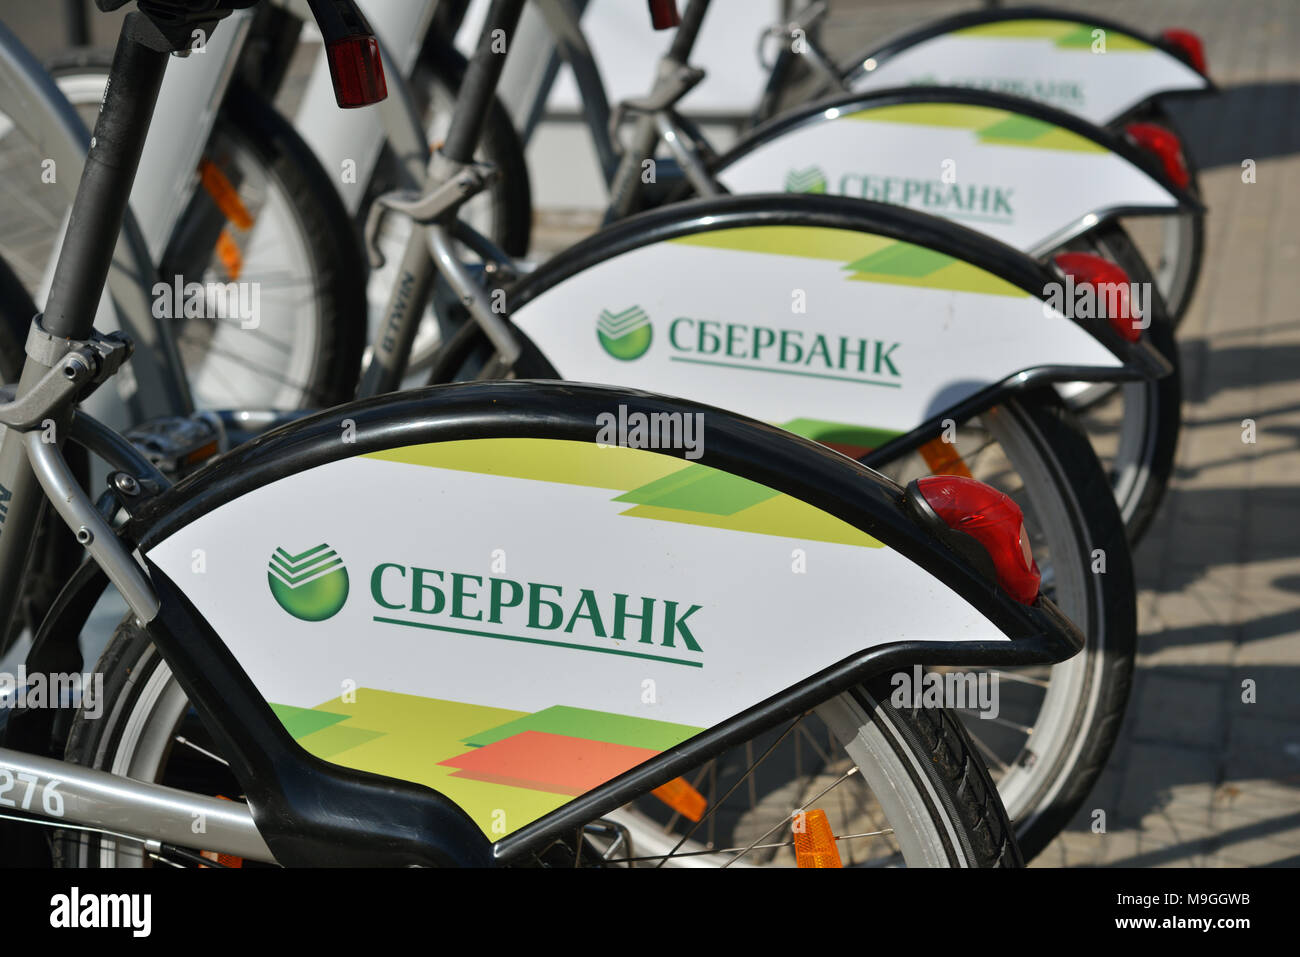 Moskau, Russland - 1. Juli 2014: Neues Fahrradverleihsystem, gesponsert von Sberbank. Ziel des Projekts war es, eine Alternative zu einem Auto oder öffentlichen Verkehrsmitteln zu schaffen Stockfoto